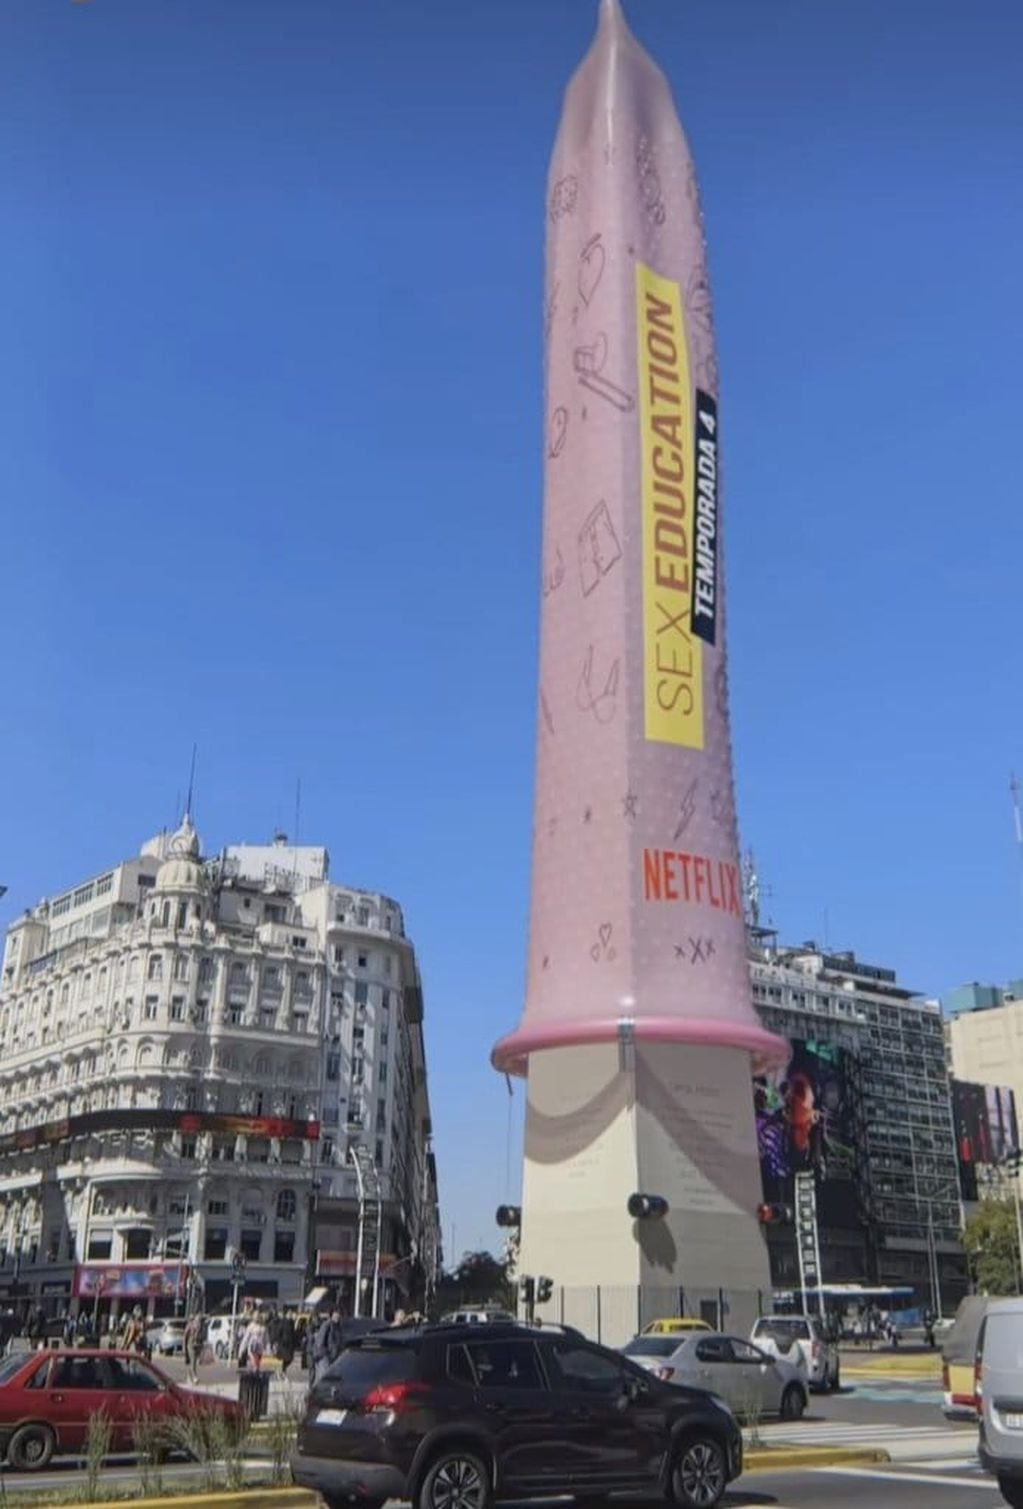 Le pusieron un preservativo gigante al obelisco.